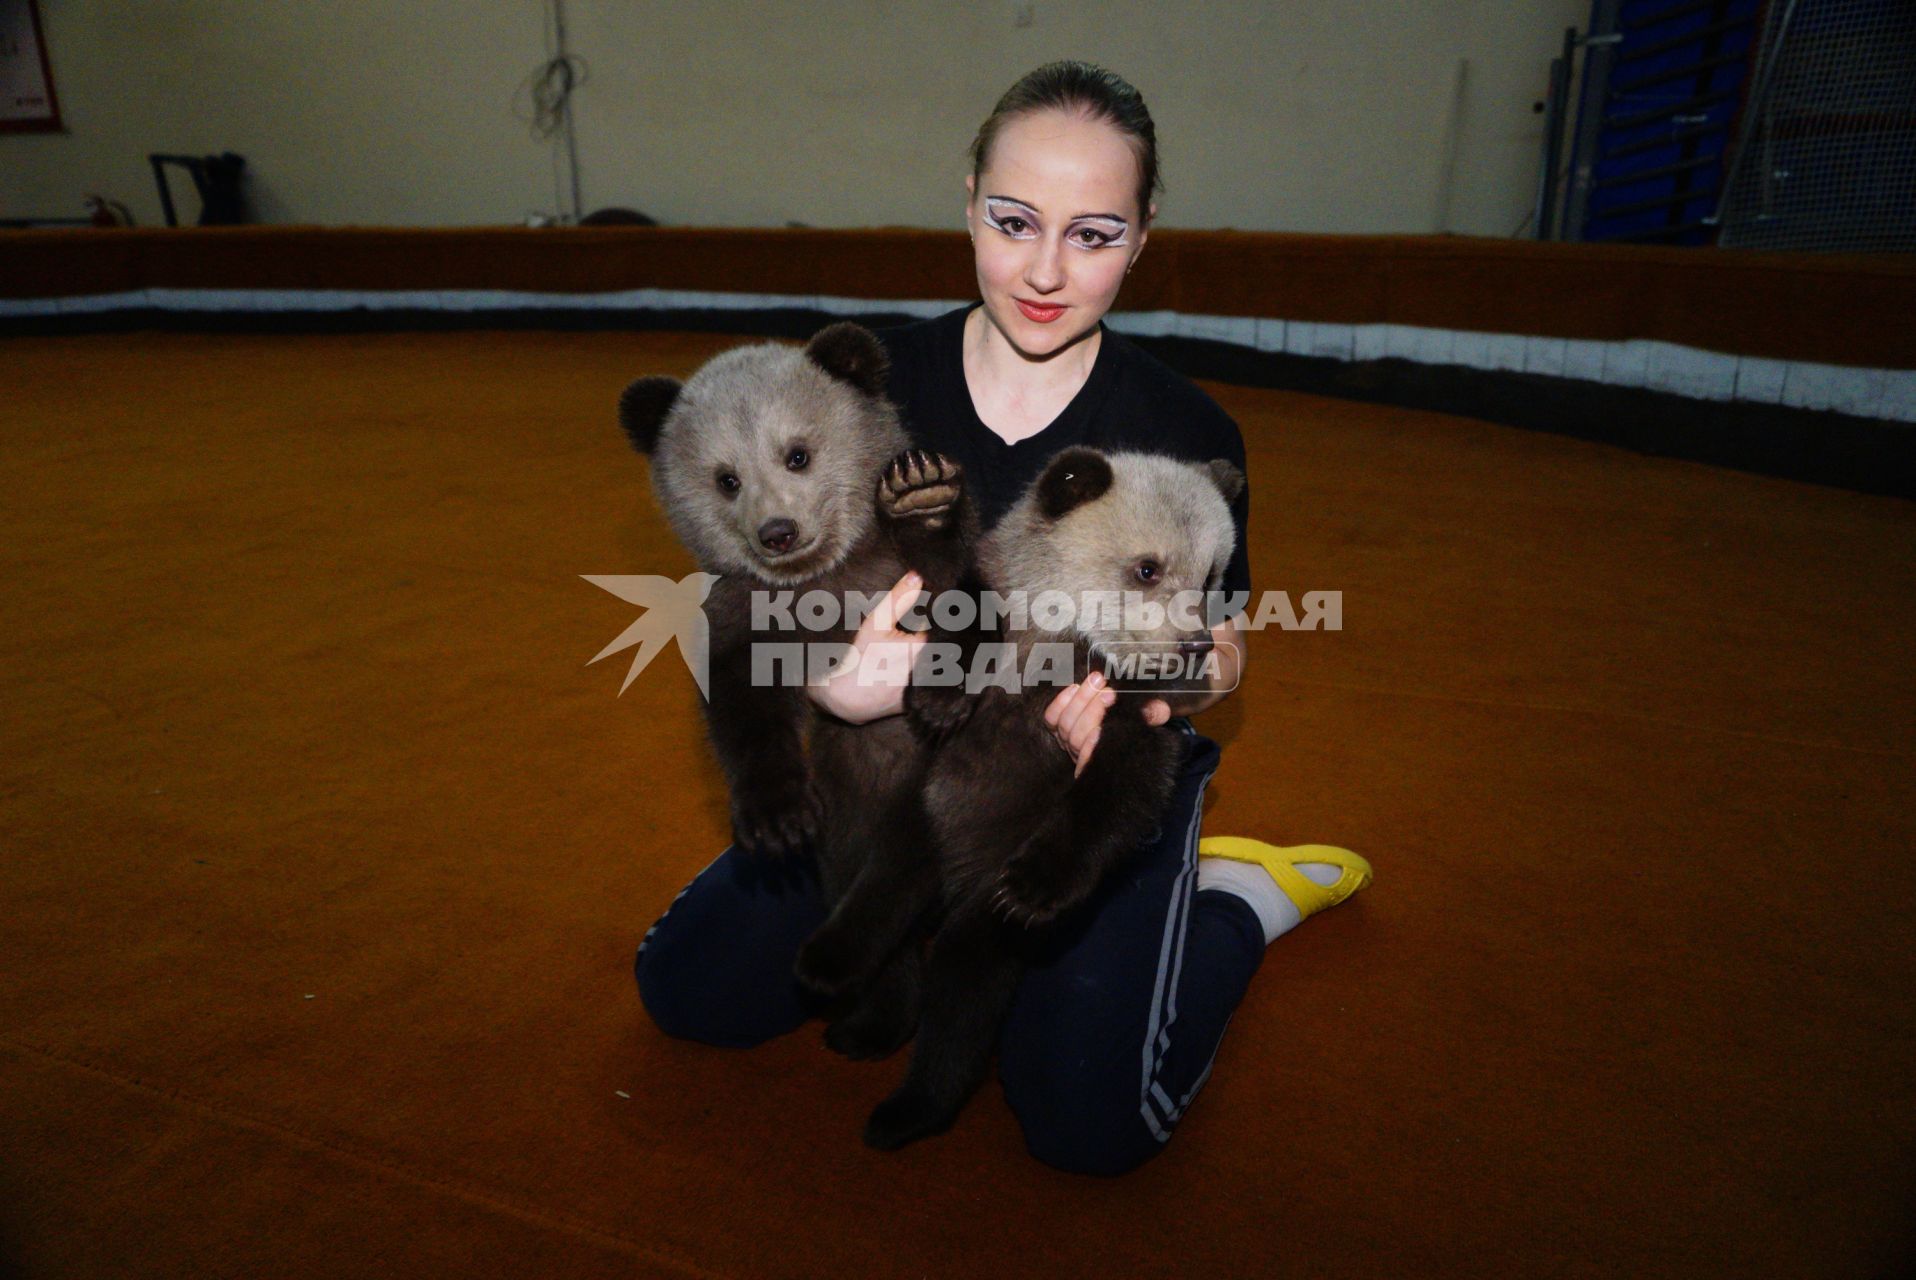 Цирковая артистка держит на руках медвежат, переданных в Екатеринбургский цирк охотниками.